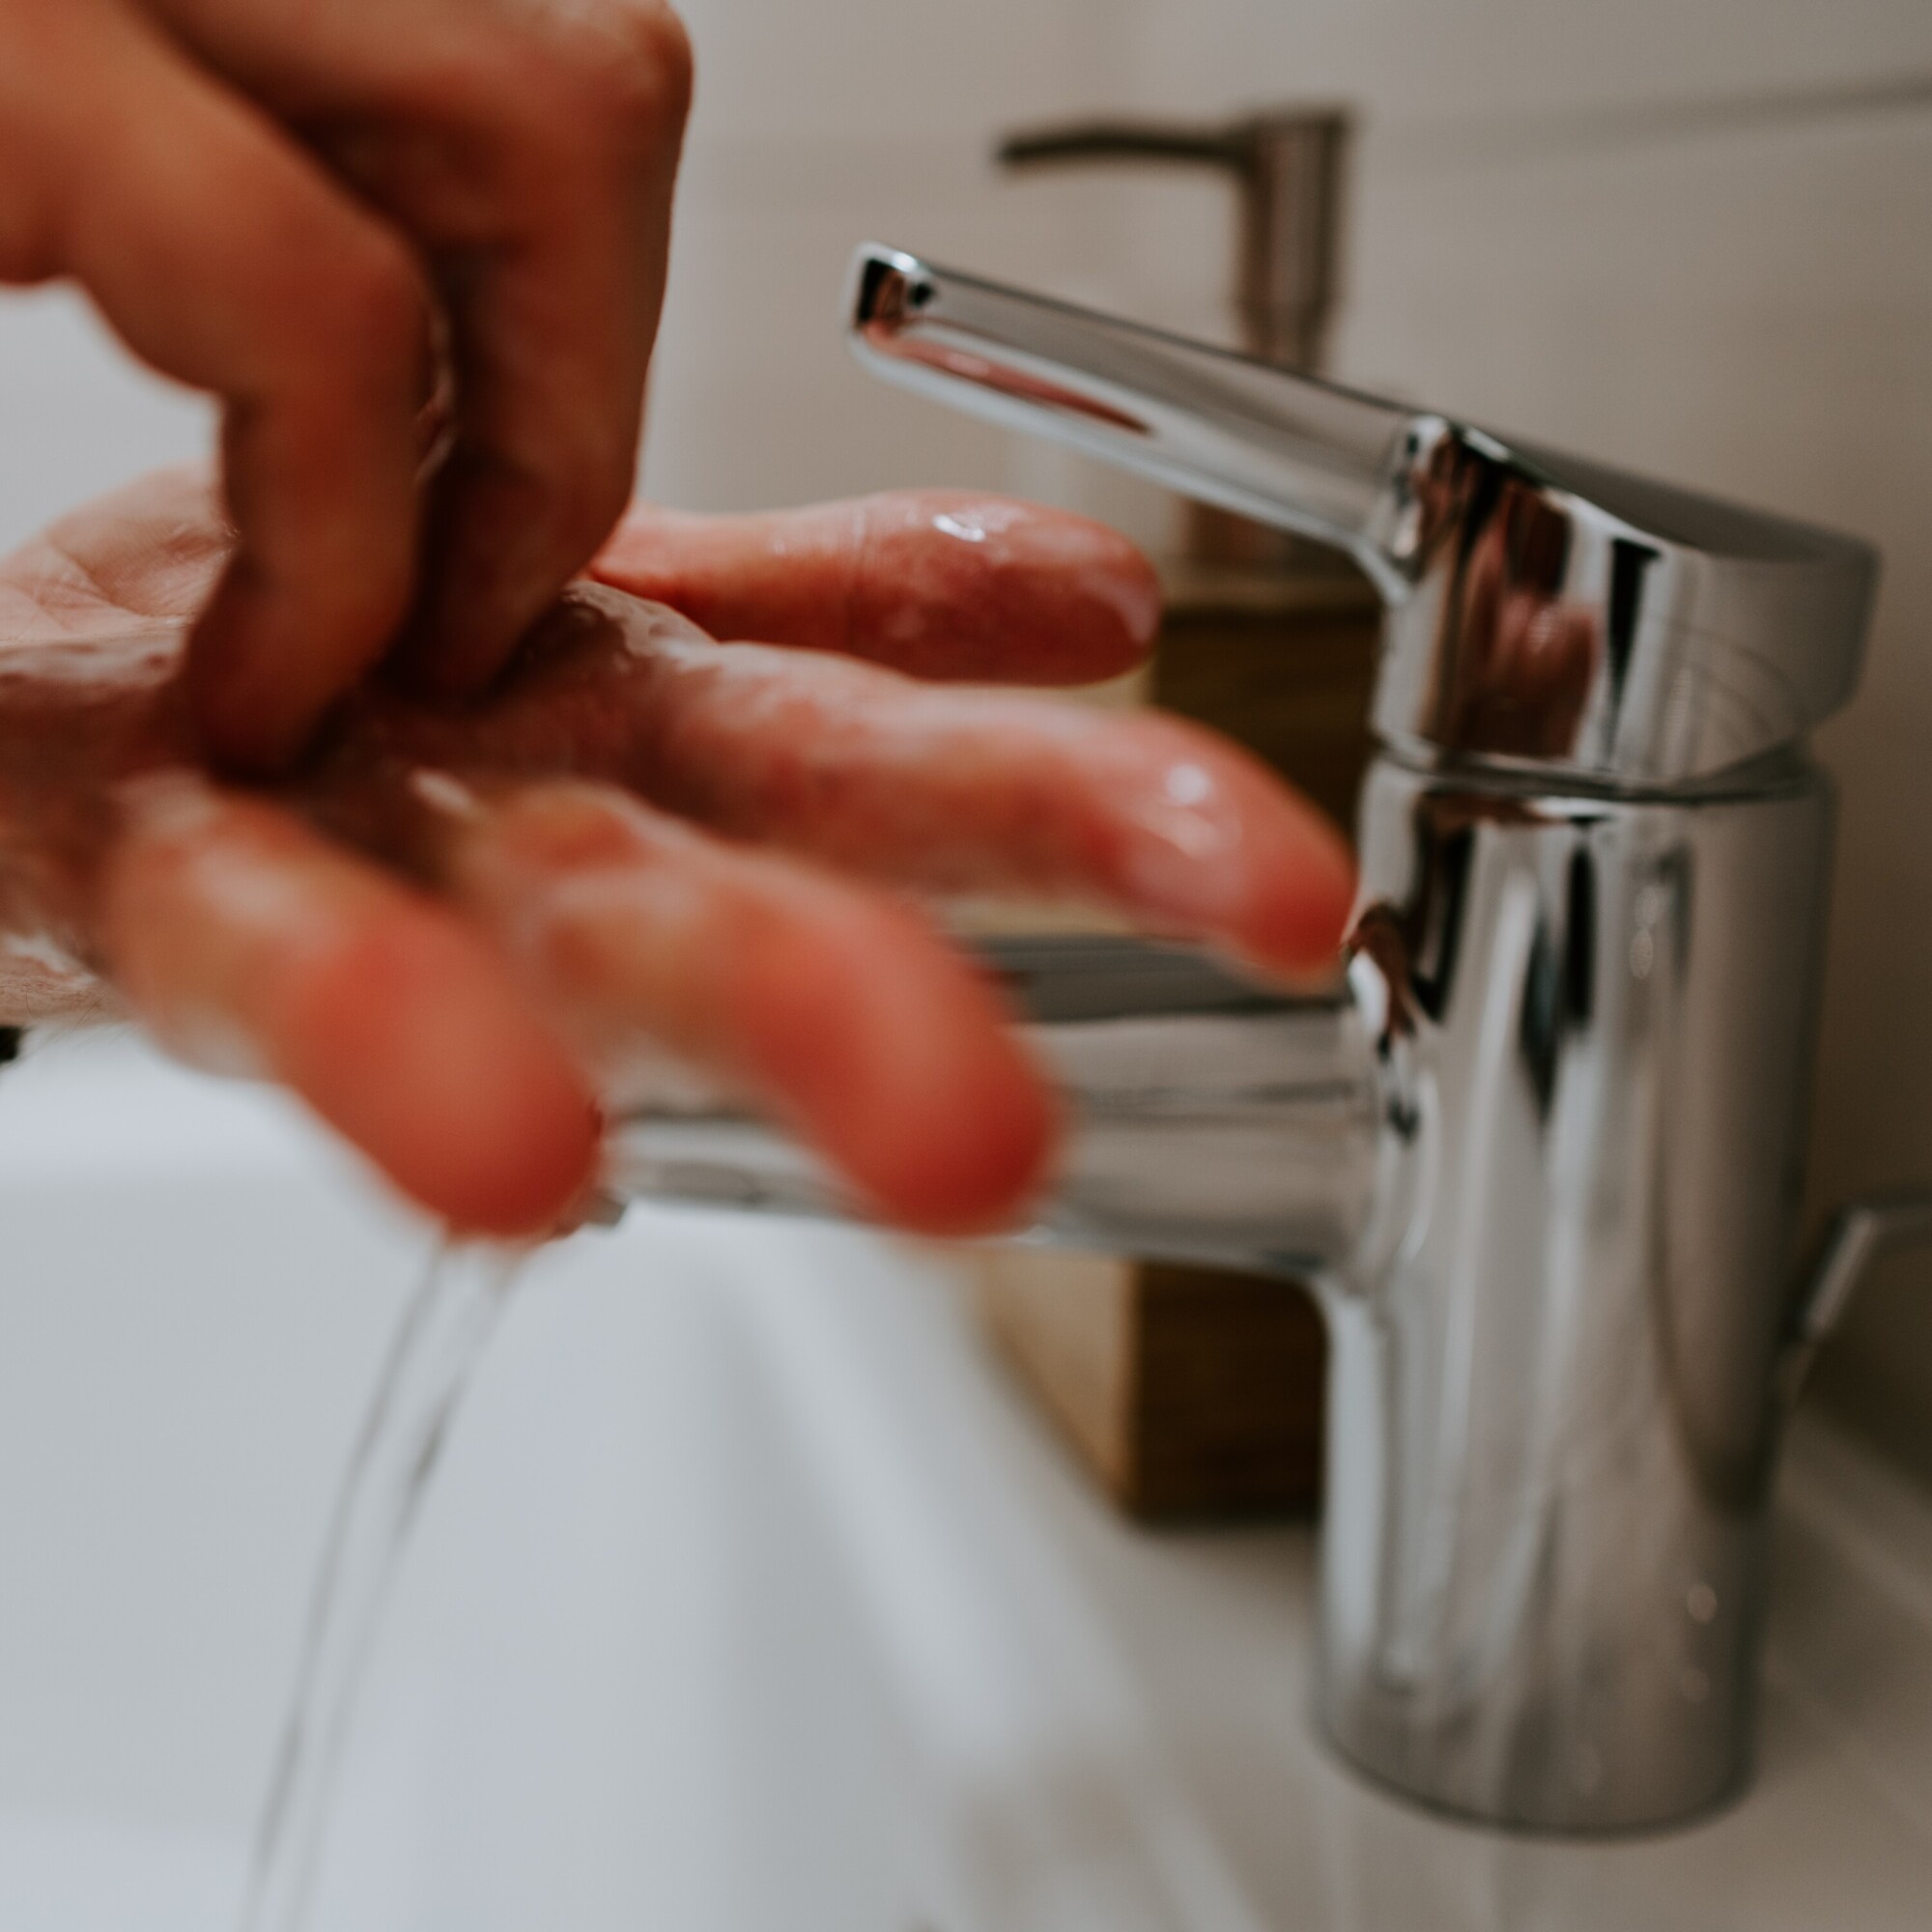 Bild: Gründliches Händewaschen unter fliessendem Wasser